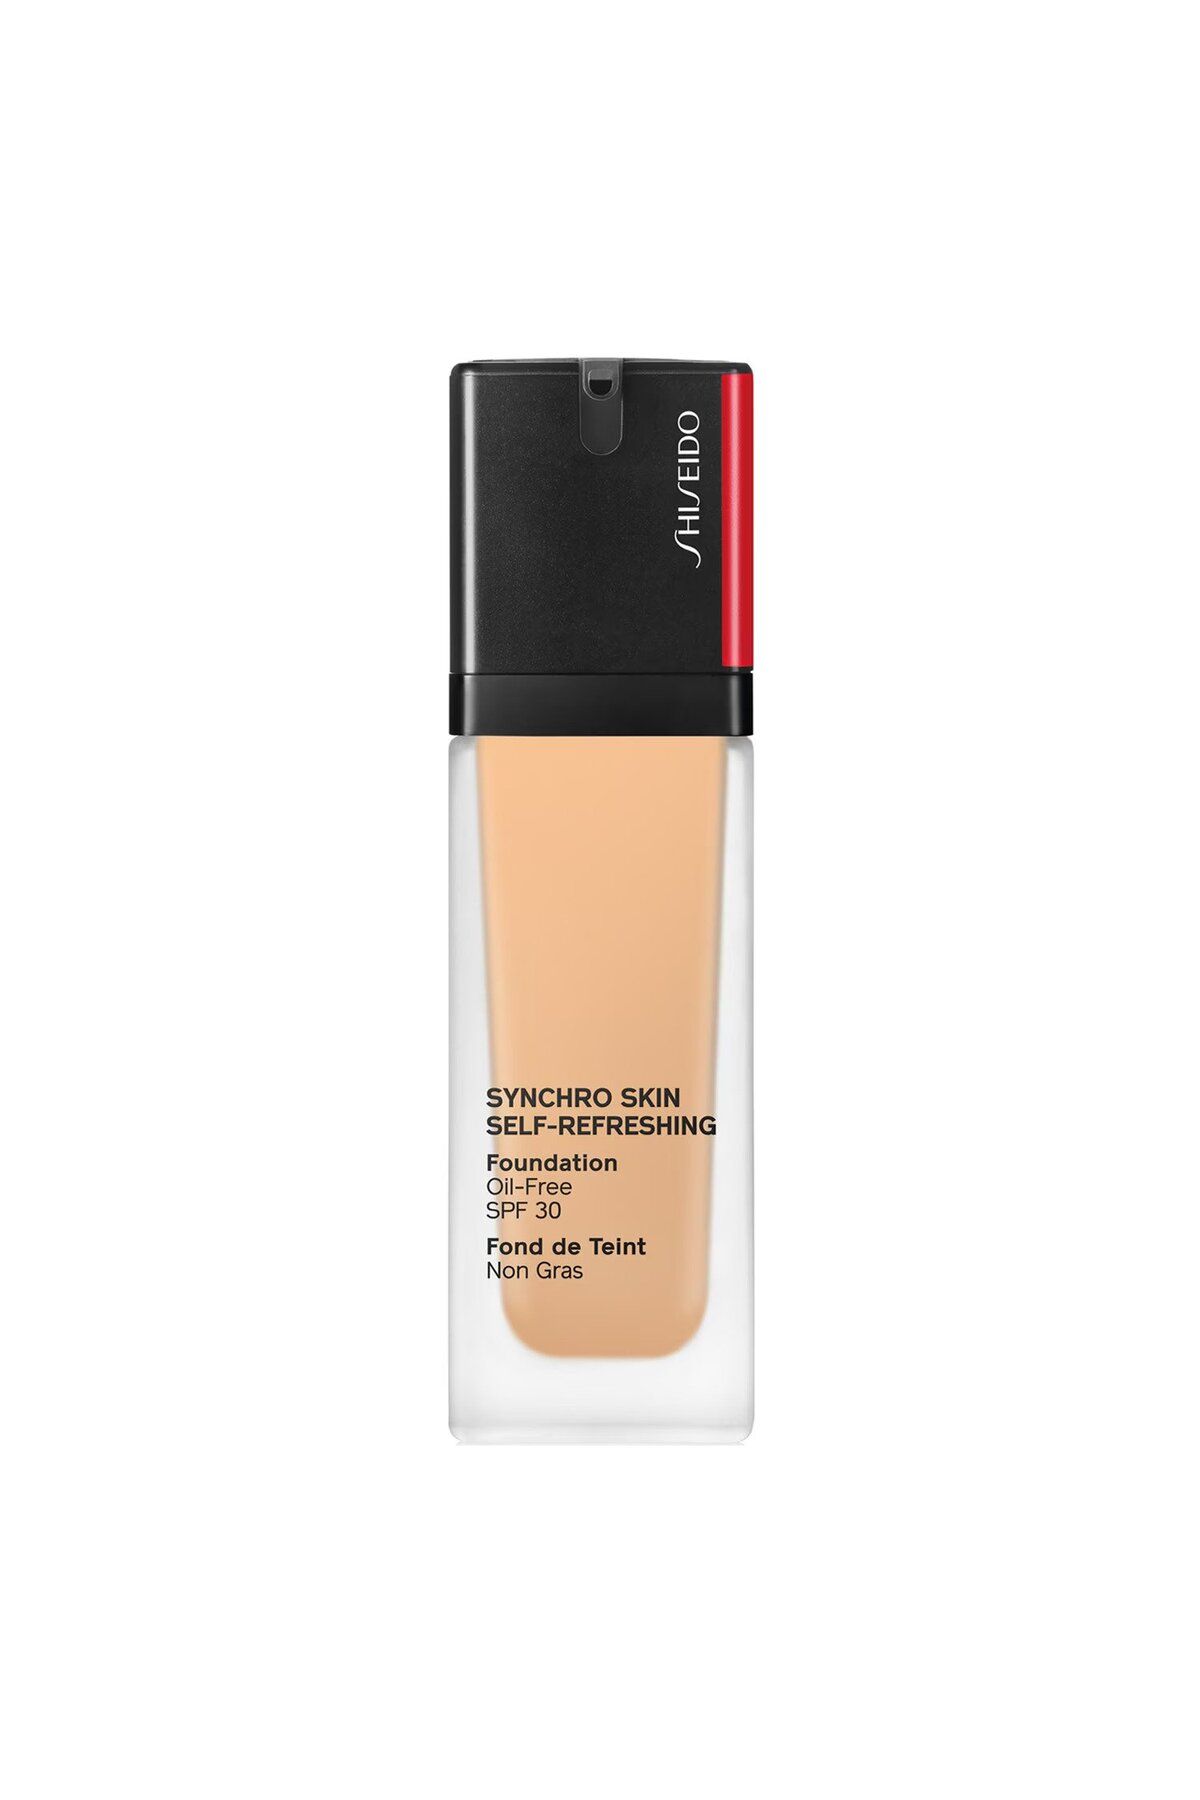 Shiseido Synchro Skin Self-Refreshing - SPF 30 Korumalı Uzun Süre Dayanıklı Taze, Doğal Bitişli Fondöten 30ml